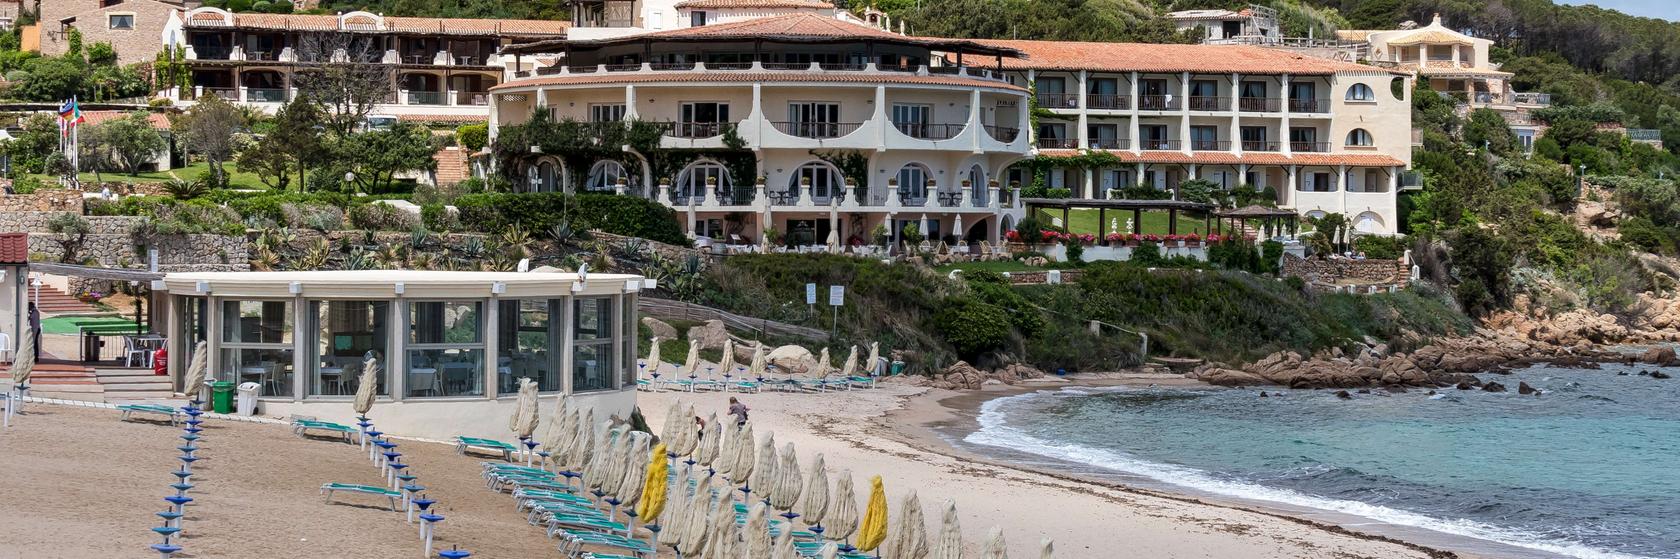 Hotely Baja Sardinia